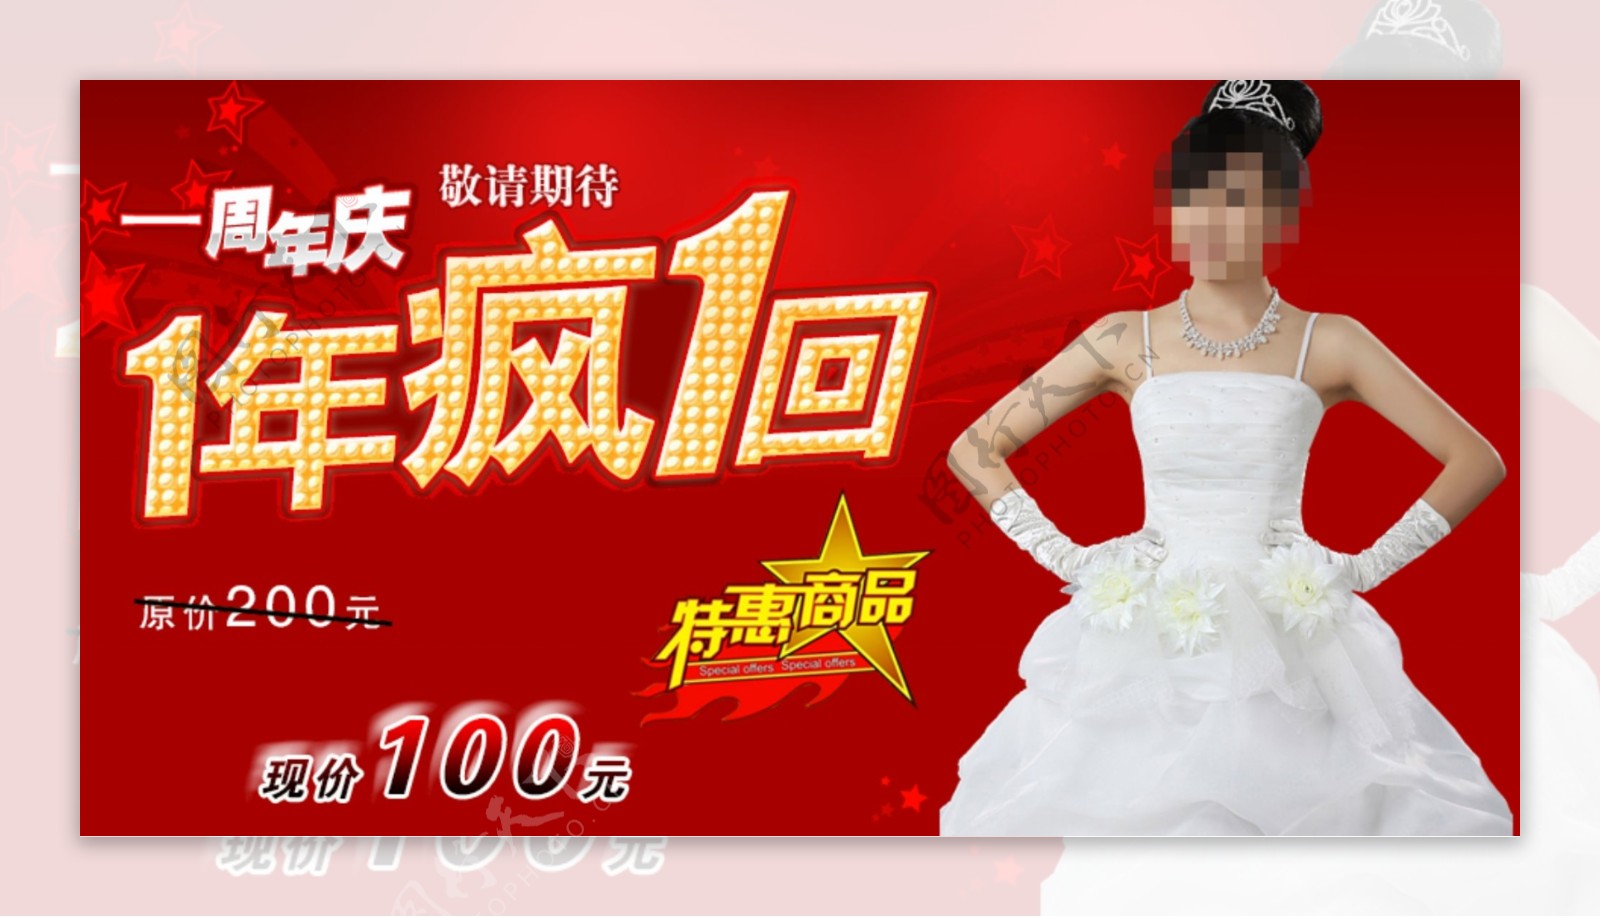 婚纱店周年庆海报设计